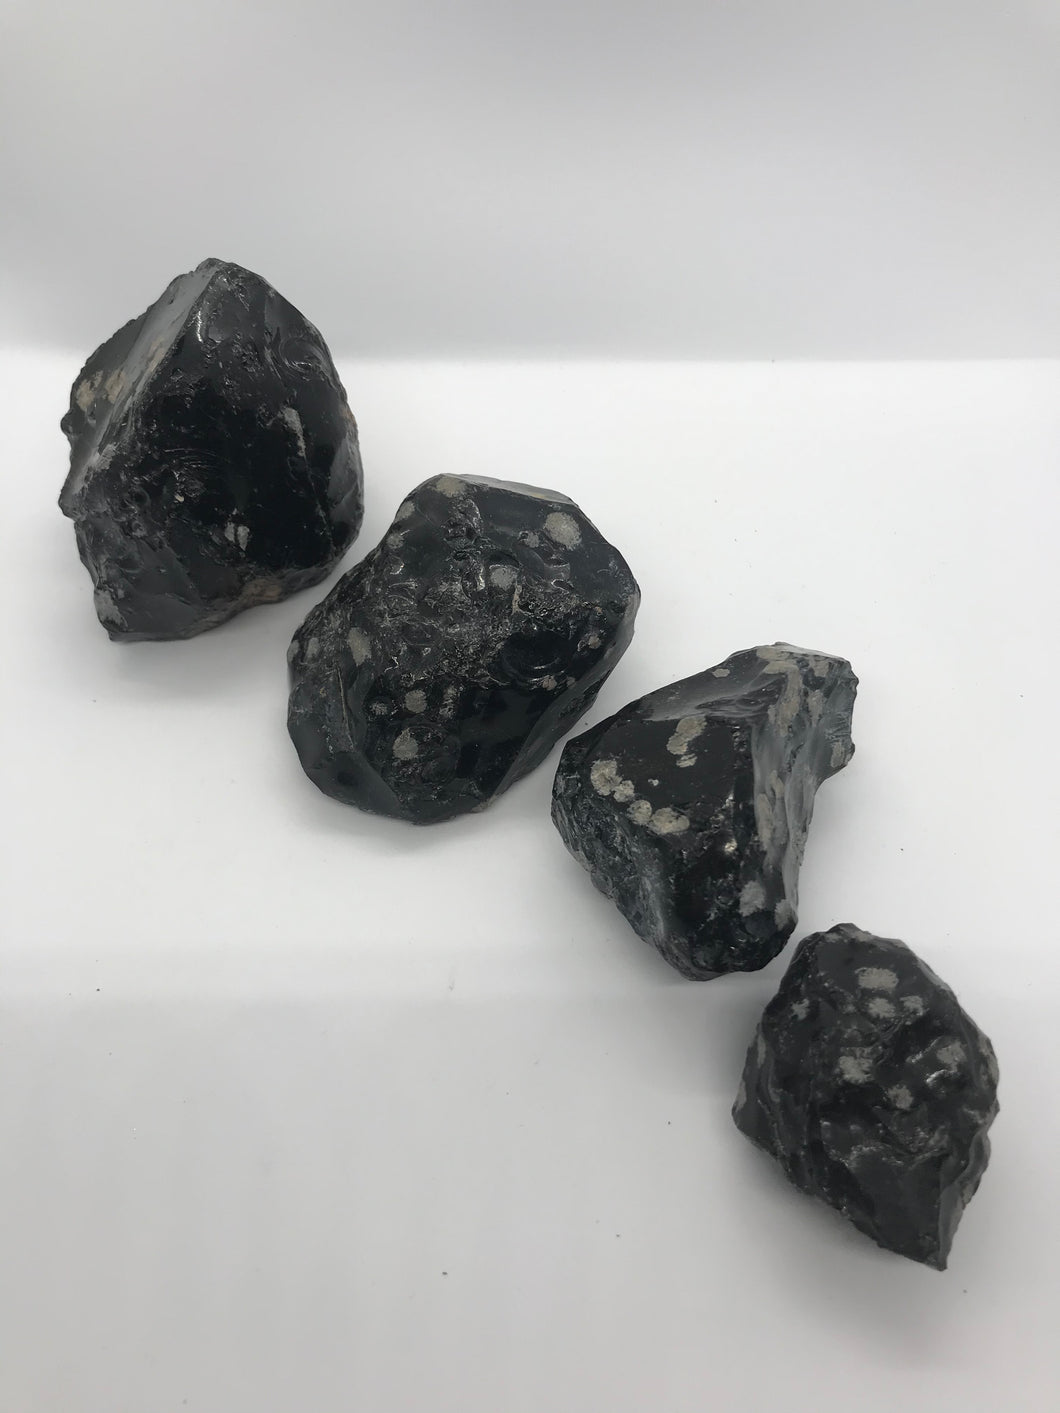 Rough Snowflake Obsidian